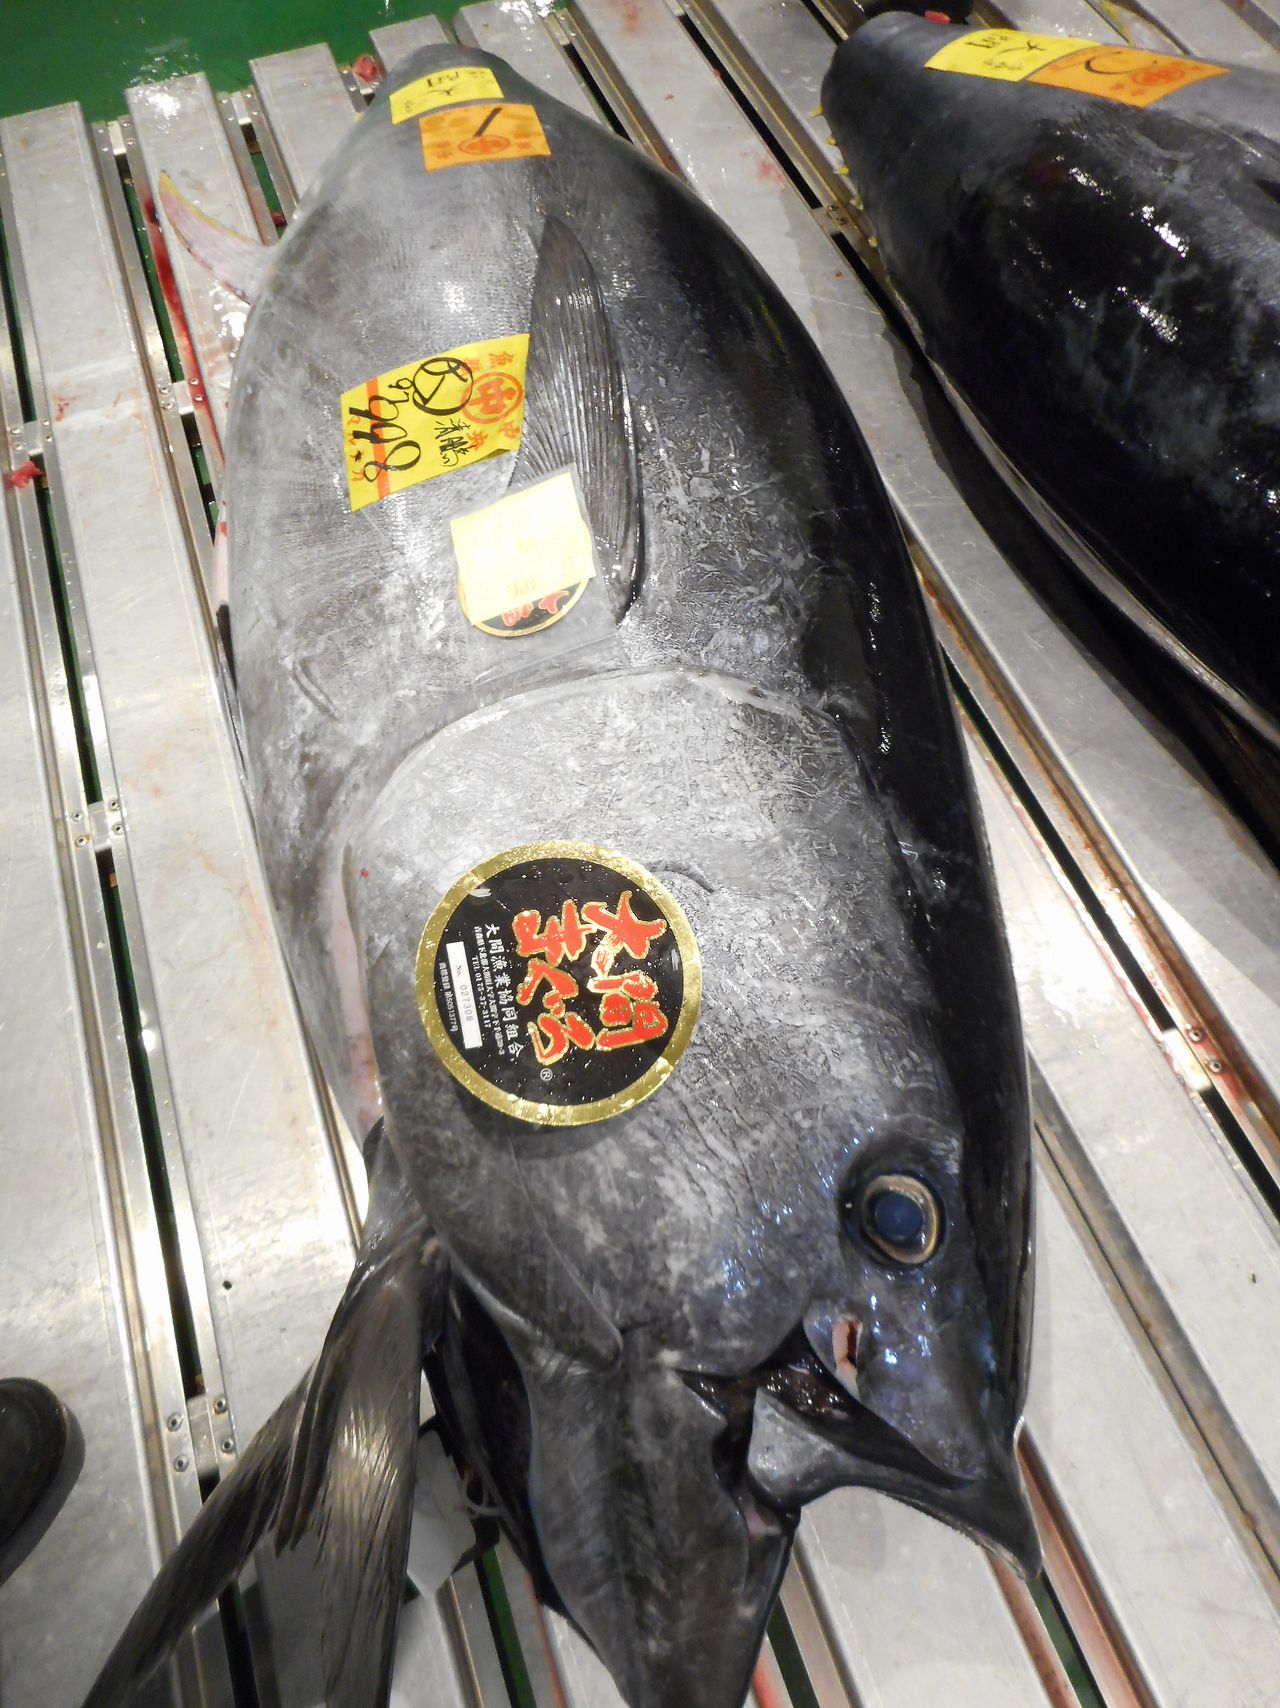 在丰洲市场被成功竞拍的太平洋蓝鳍金枪鱼，鱼身上贴着一张“大间金枪鱼”的标签，彰显其最高级的品质。希望这张标签不会就此失去品牌光芒（图片：丰州市场相关人士）